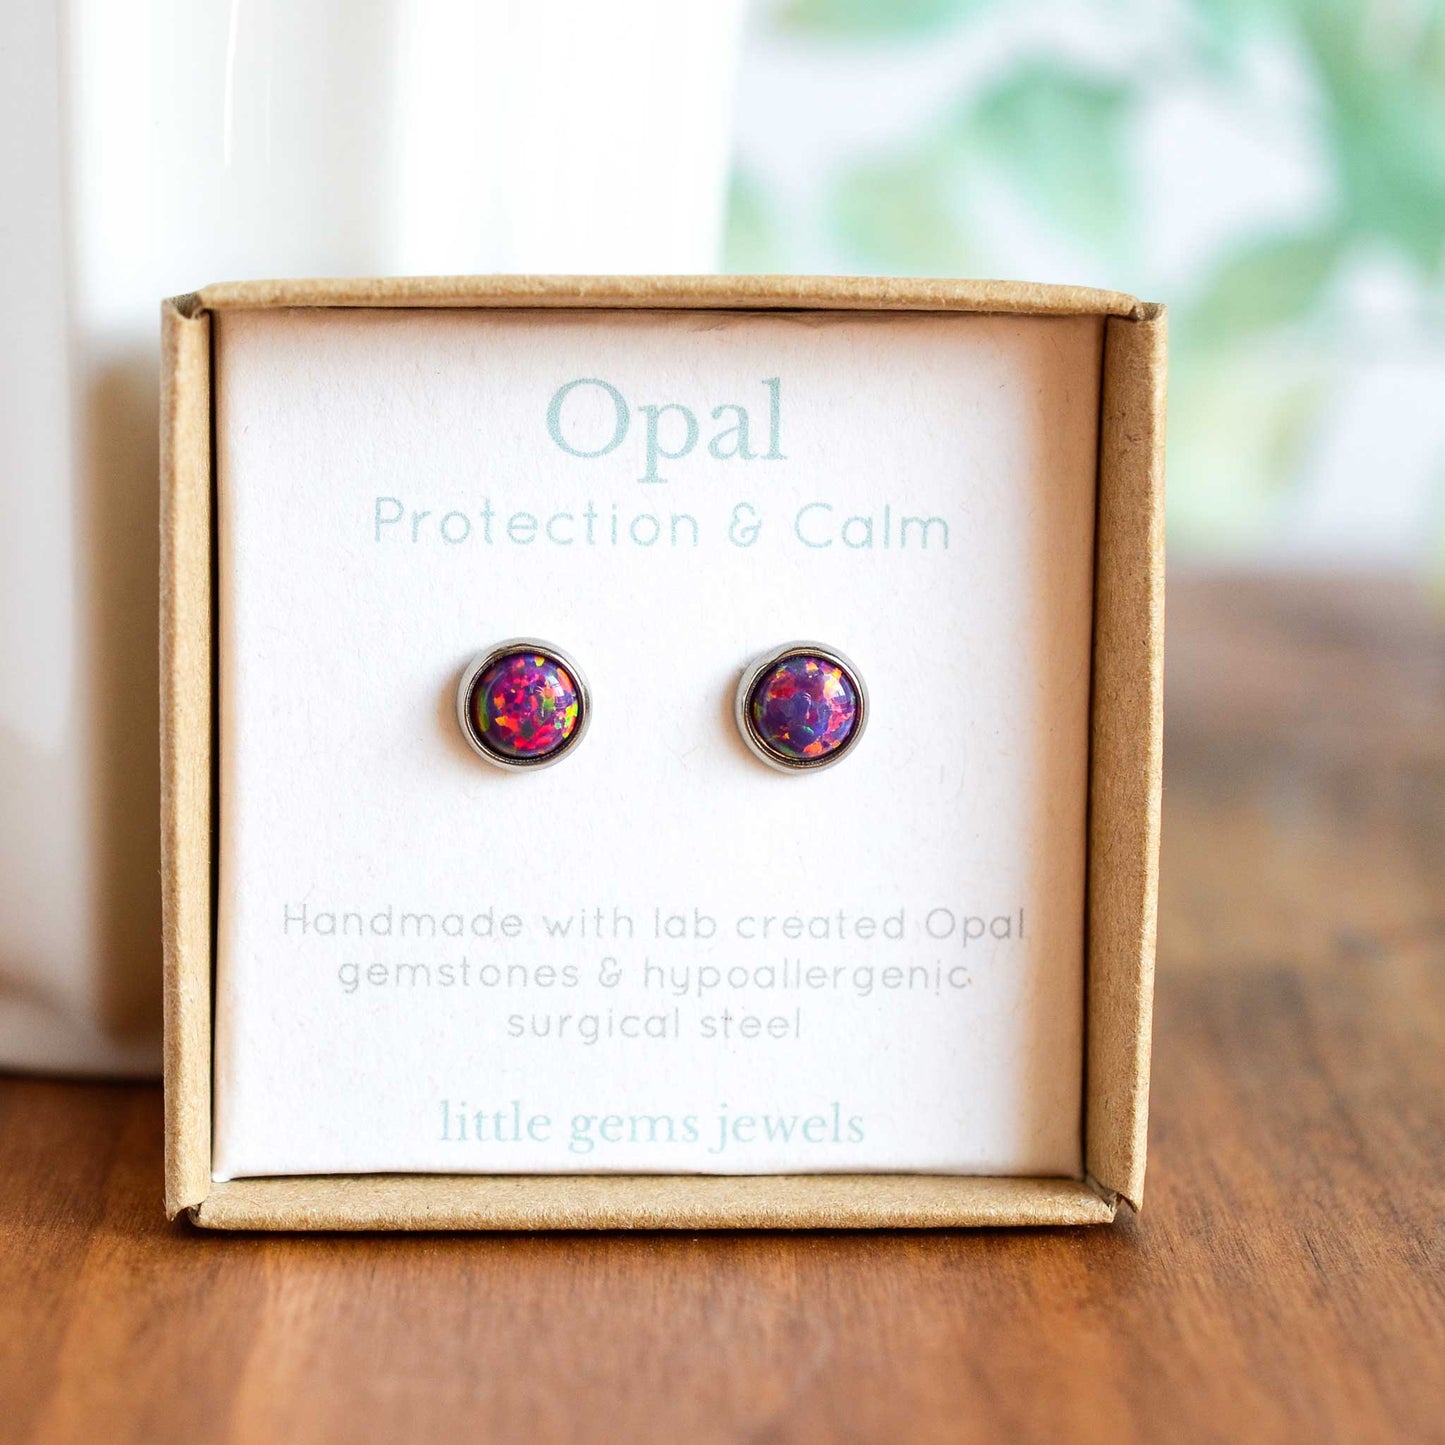 Purple Opal stud earrings in eco friendly gift box